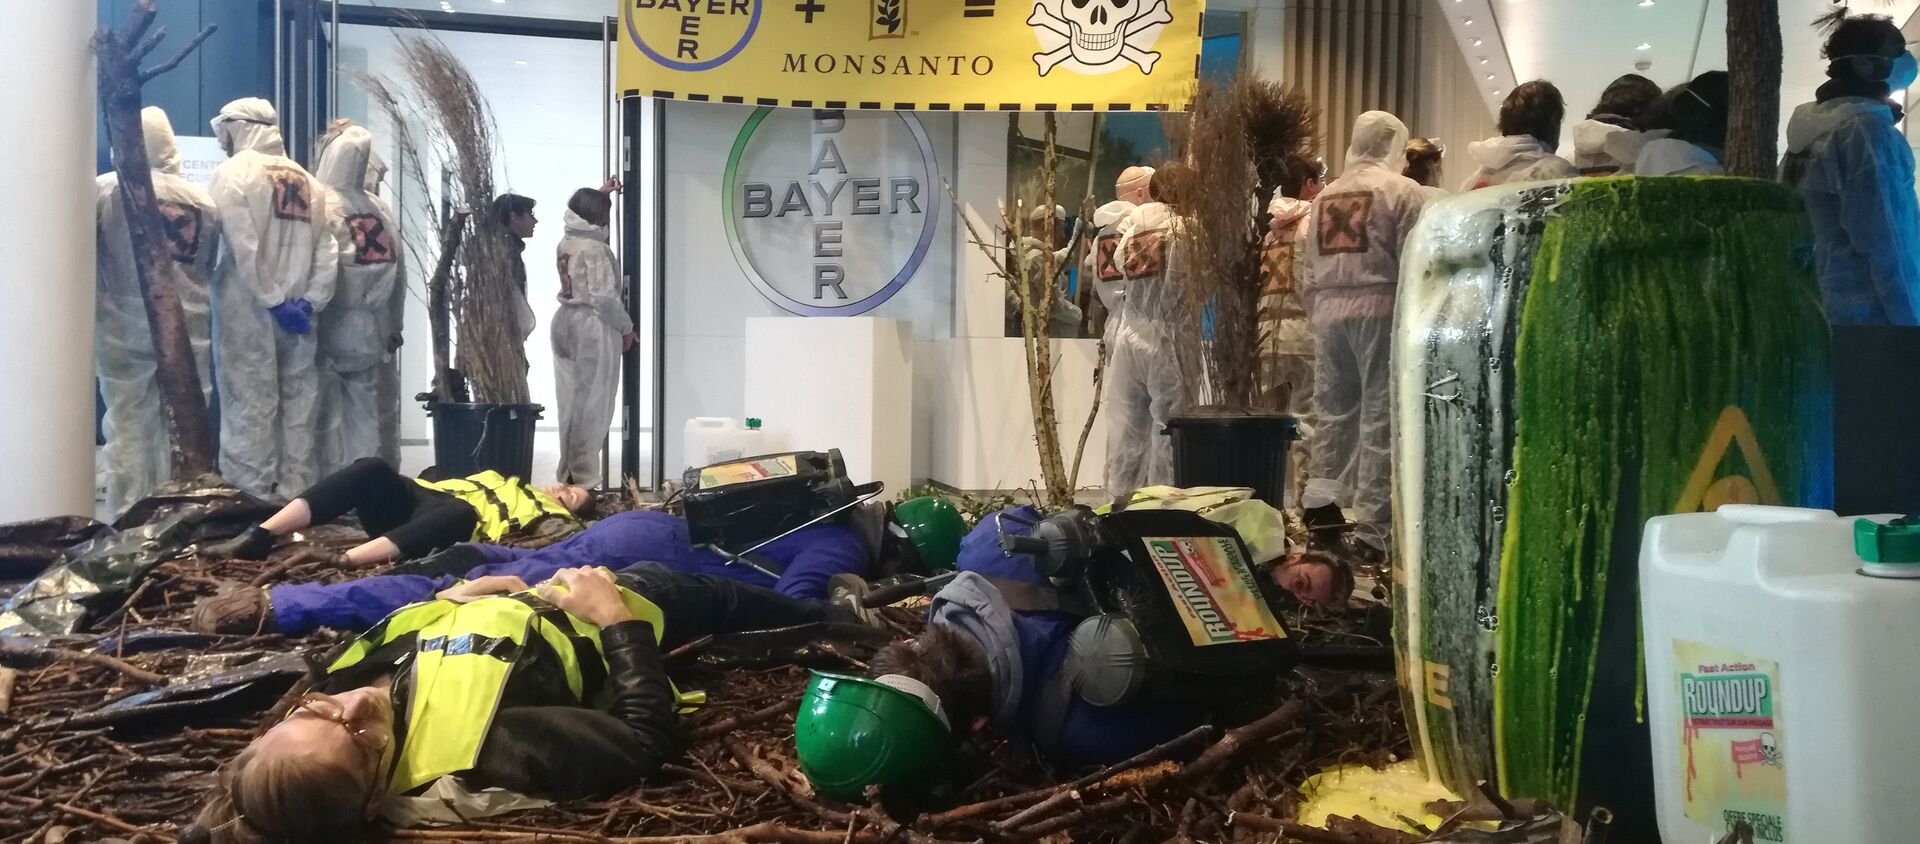 Opération nature morte pour dénoncer activités mortifères de Bayer-Monsanto - Sputnik Afrique, 1920, 24.05.2019